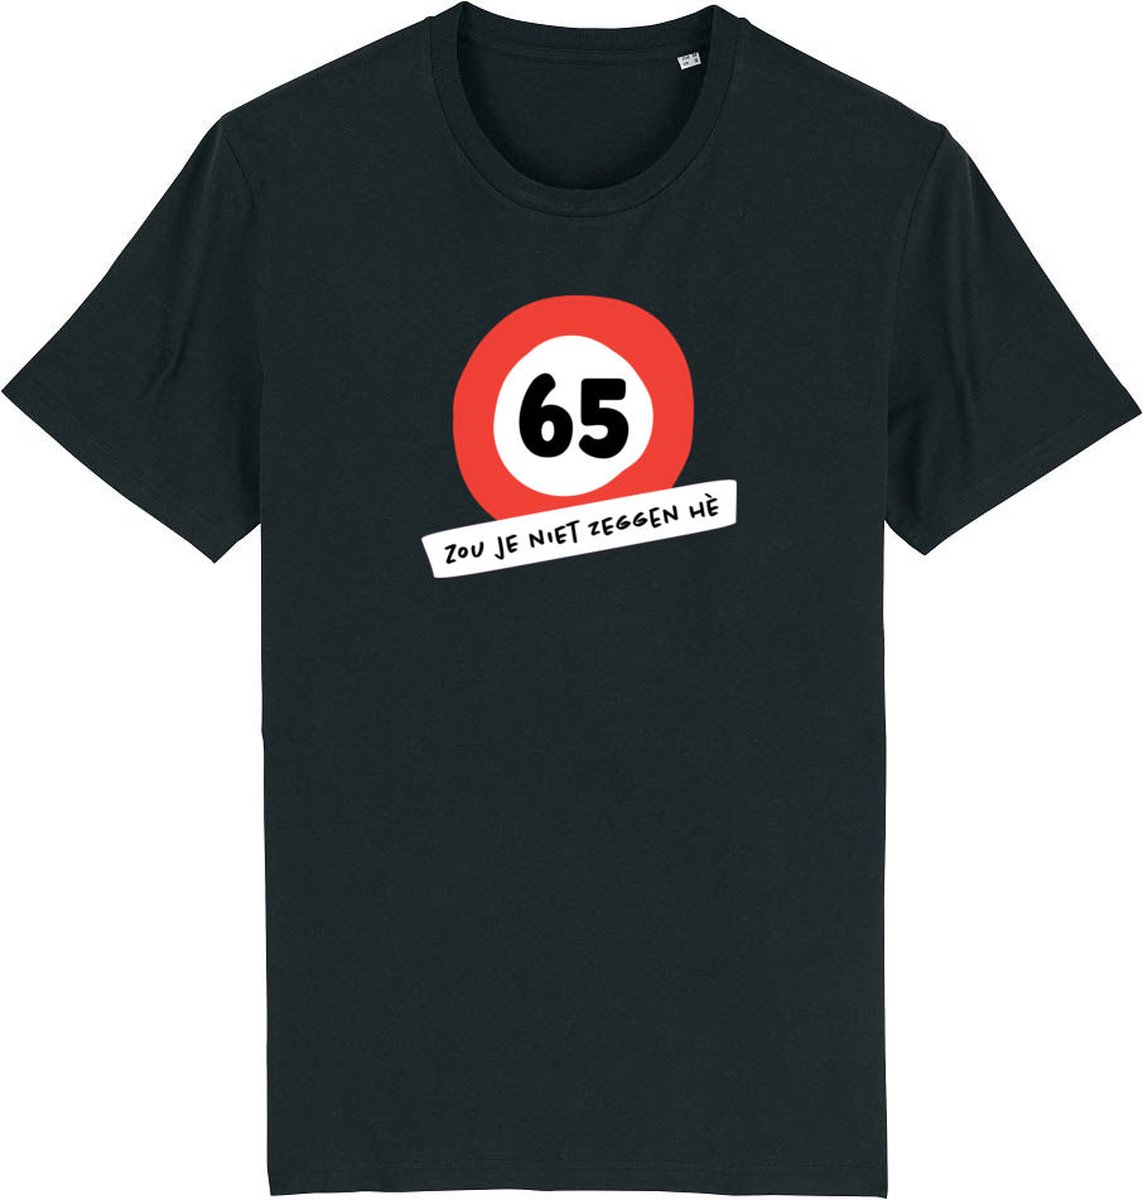 65 zou je niet zeggen he Rustaagh heren t-shirt maat 3XL - heren t-shirt korte mouw - 65 jaar verjaardag cadeau man - 65 jaar cadeau